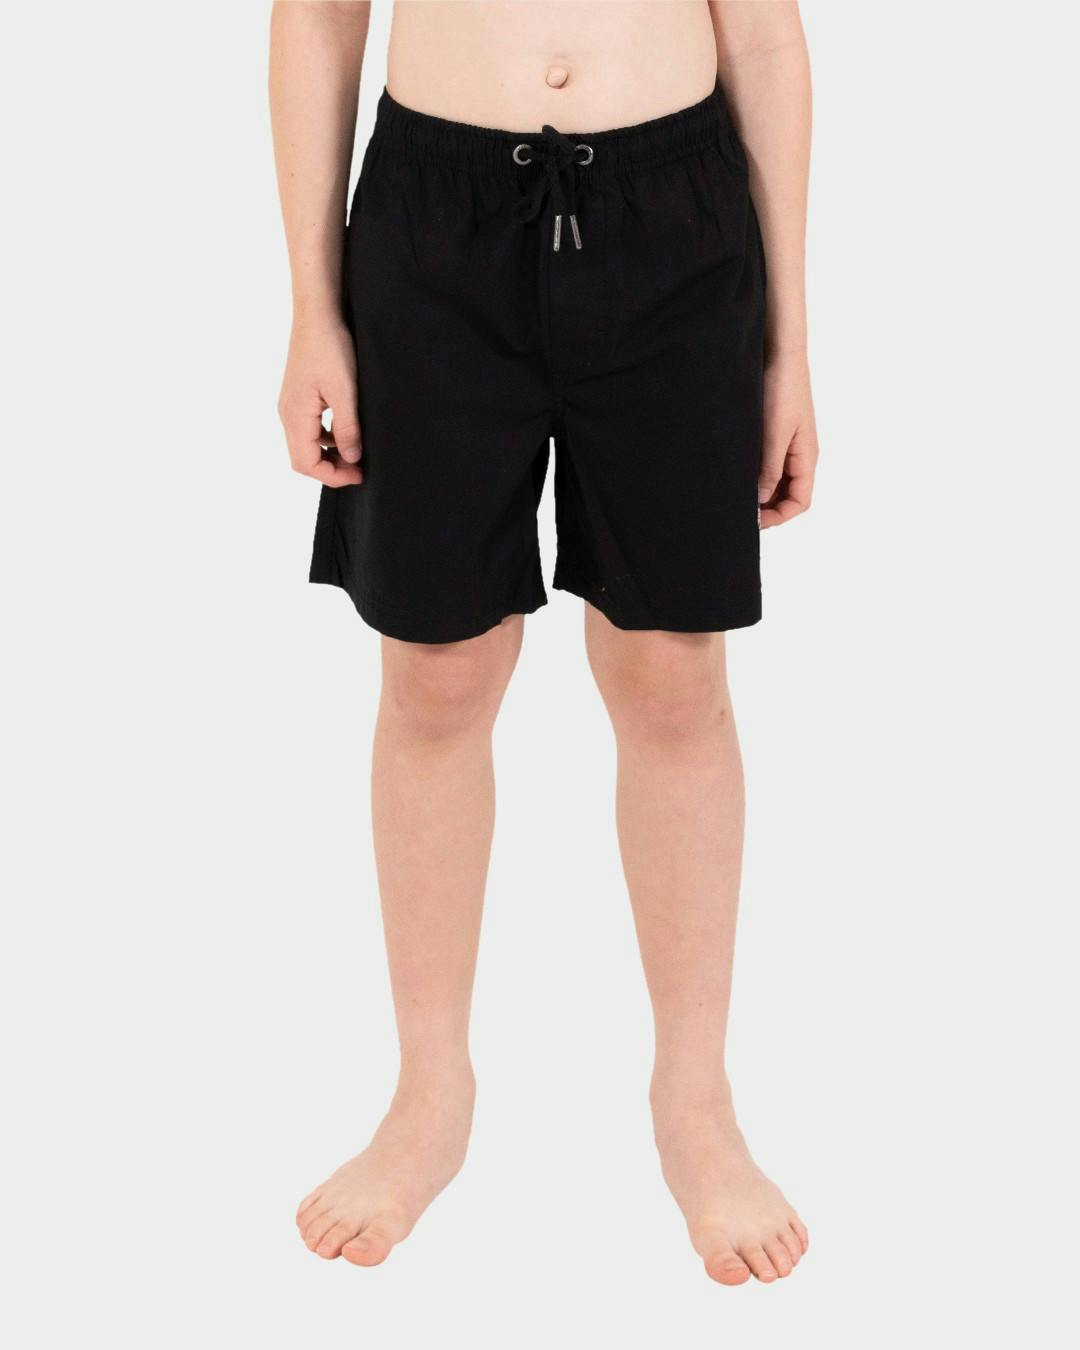 MFG Cruzier Black Solid Boys Beach Santa Cruz - Shorts